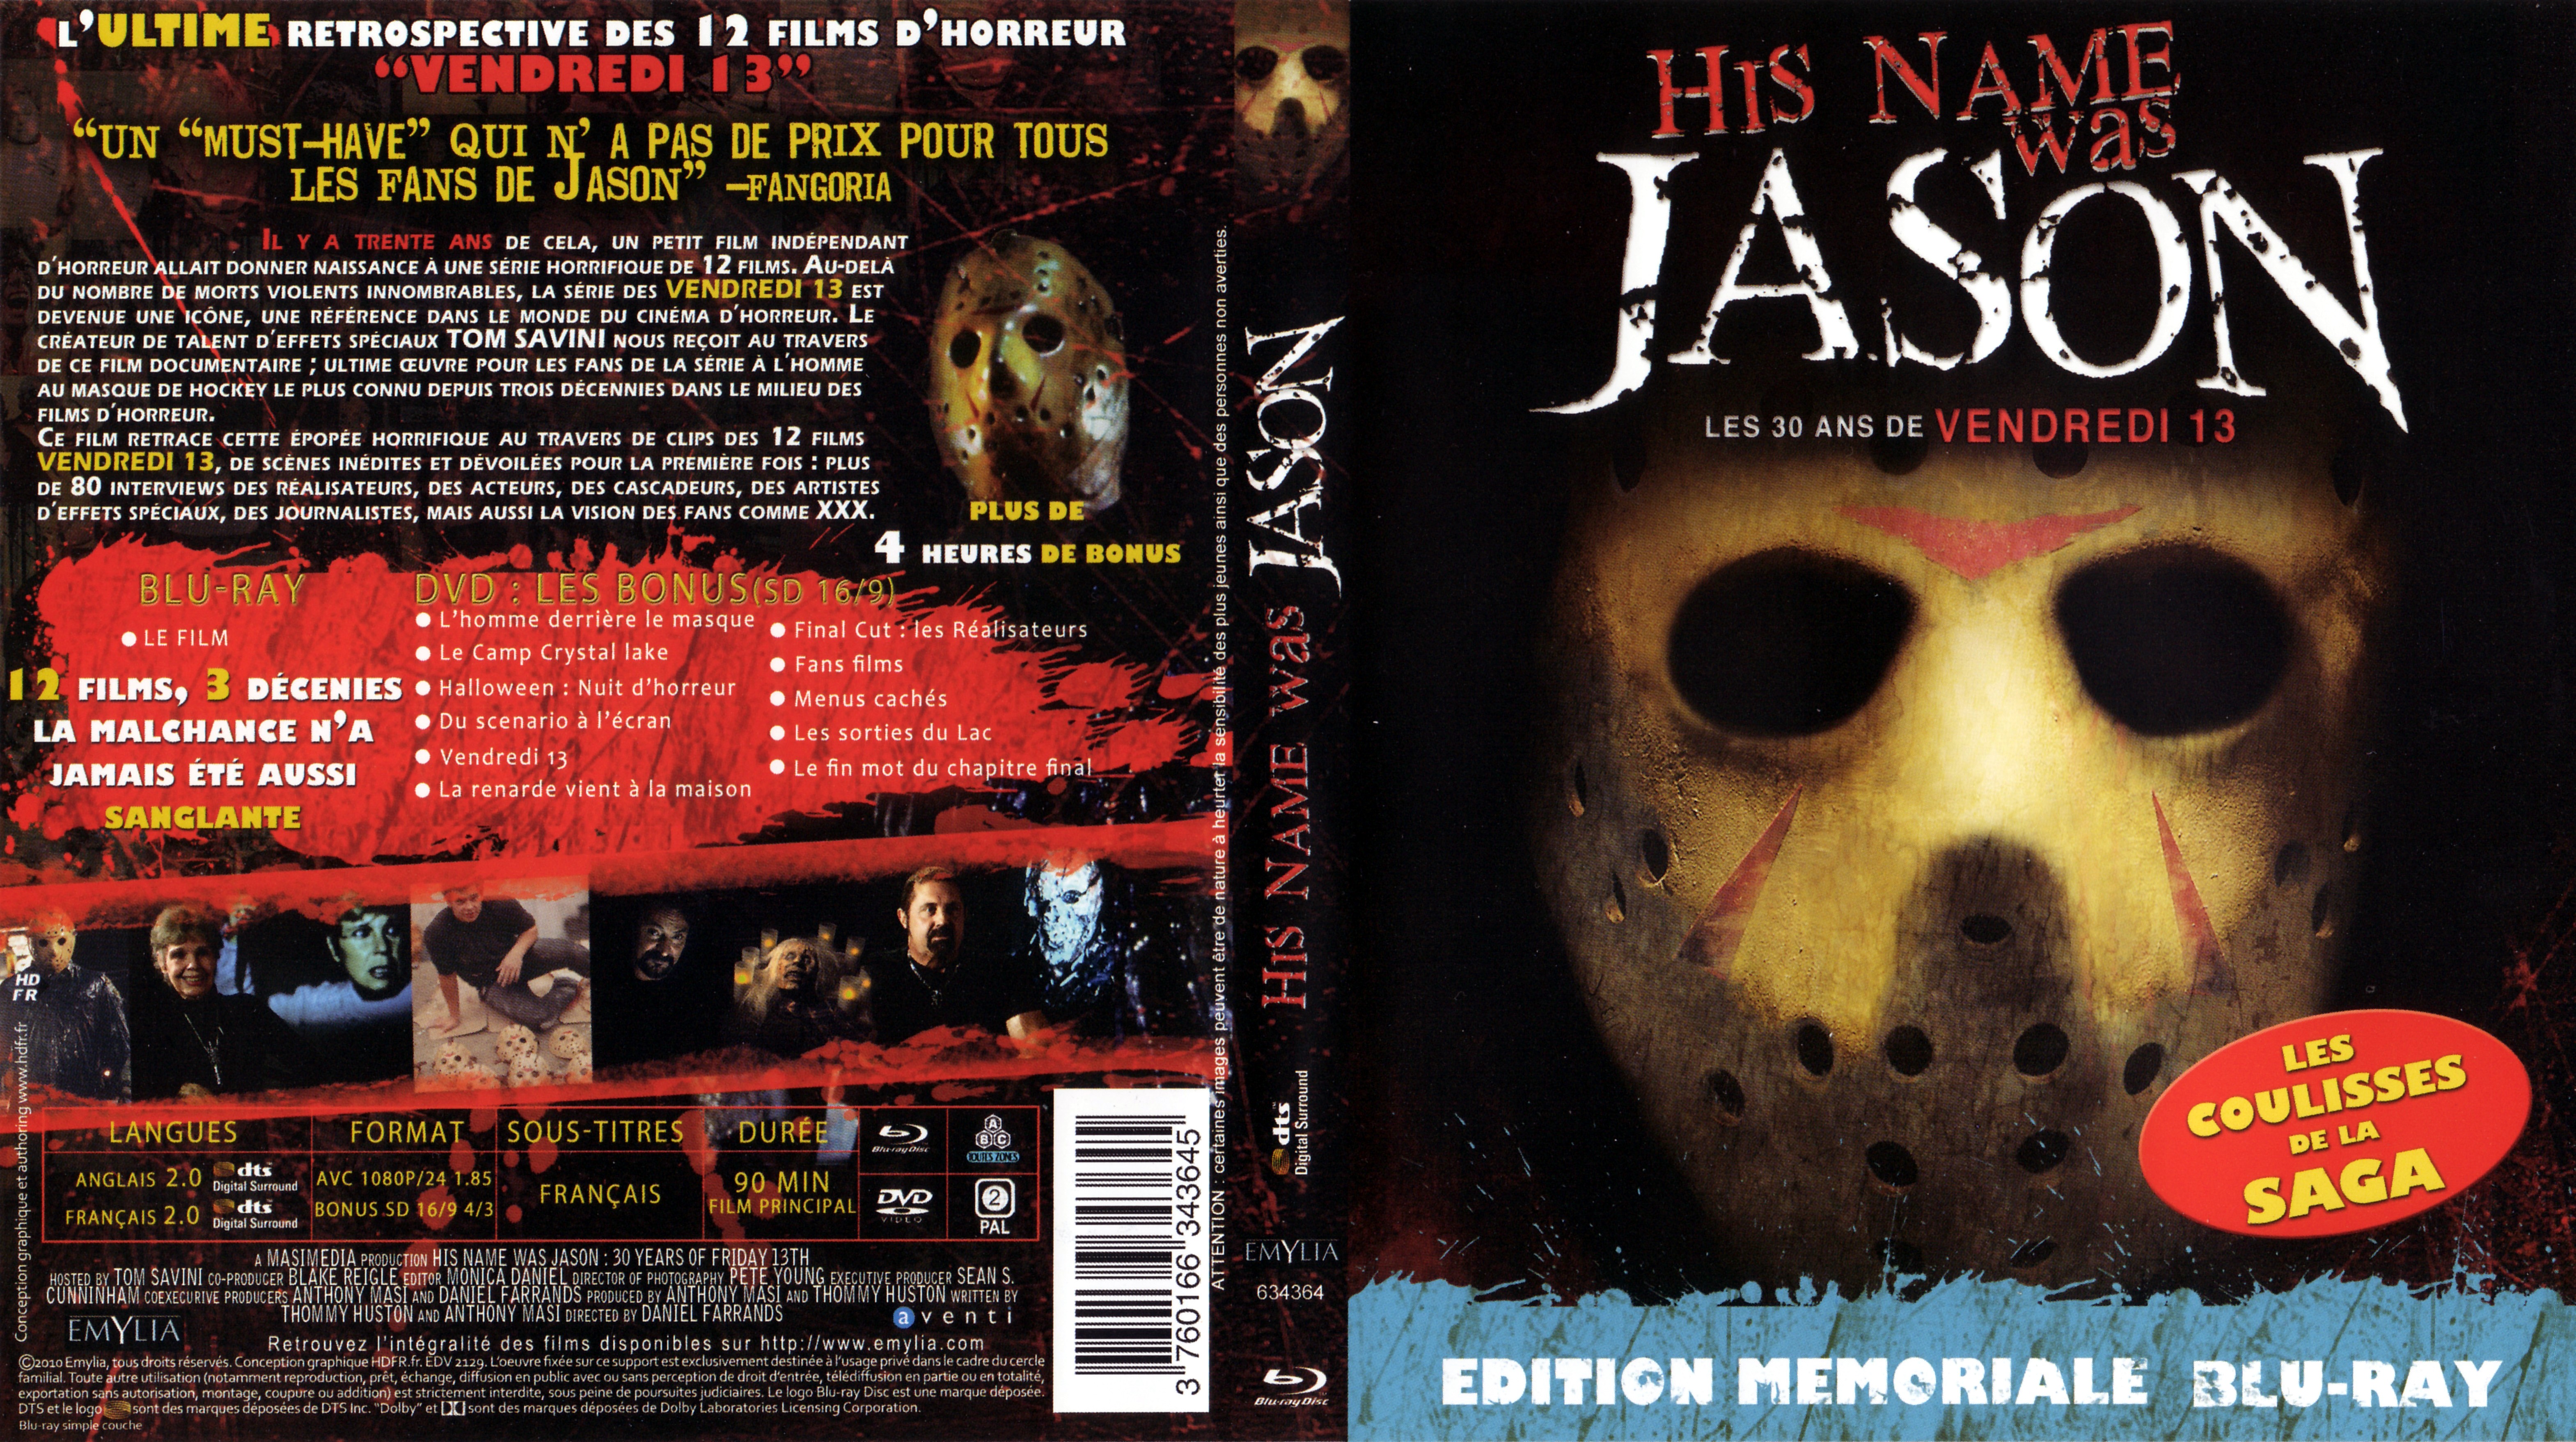 Jaquette DVD His name was Jason - Les 30 ans de Vendredi 13 (BLU-RAY)